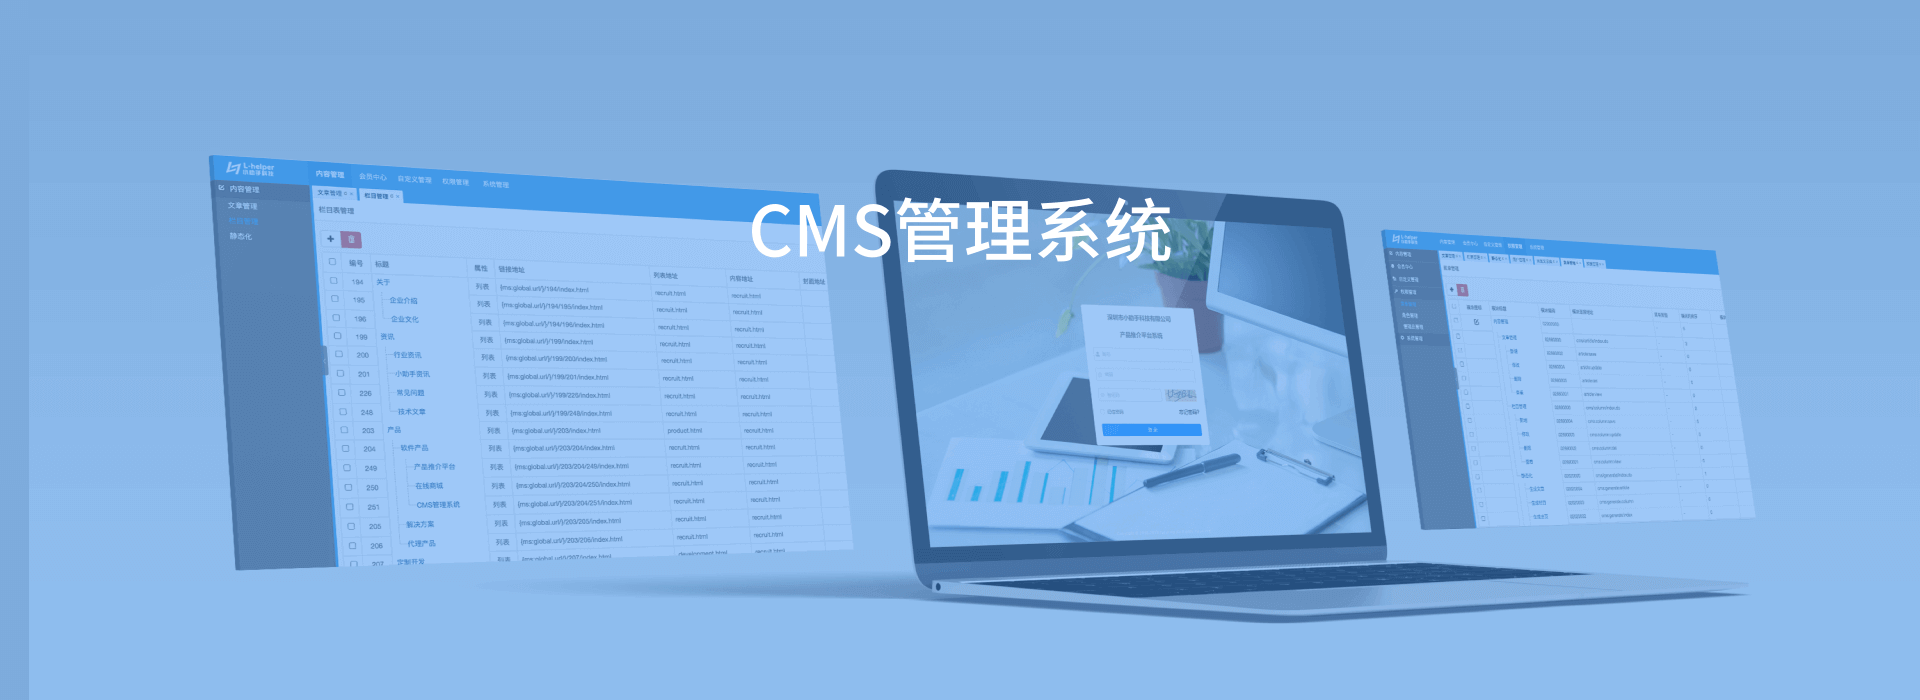 CMS管理系统_产品_软件产品图片